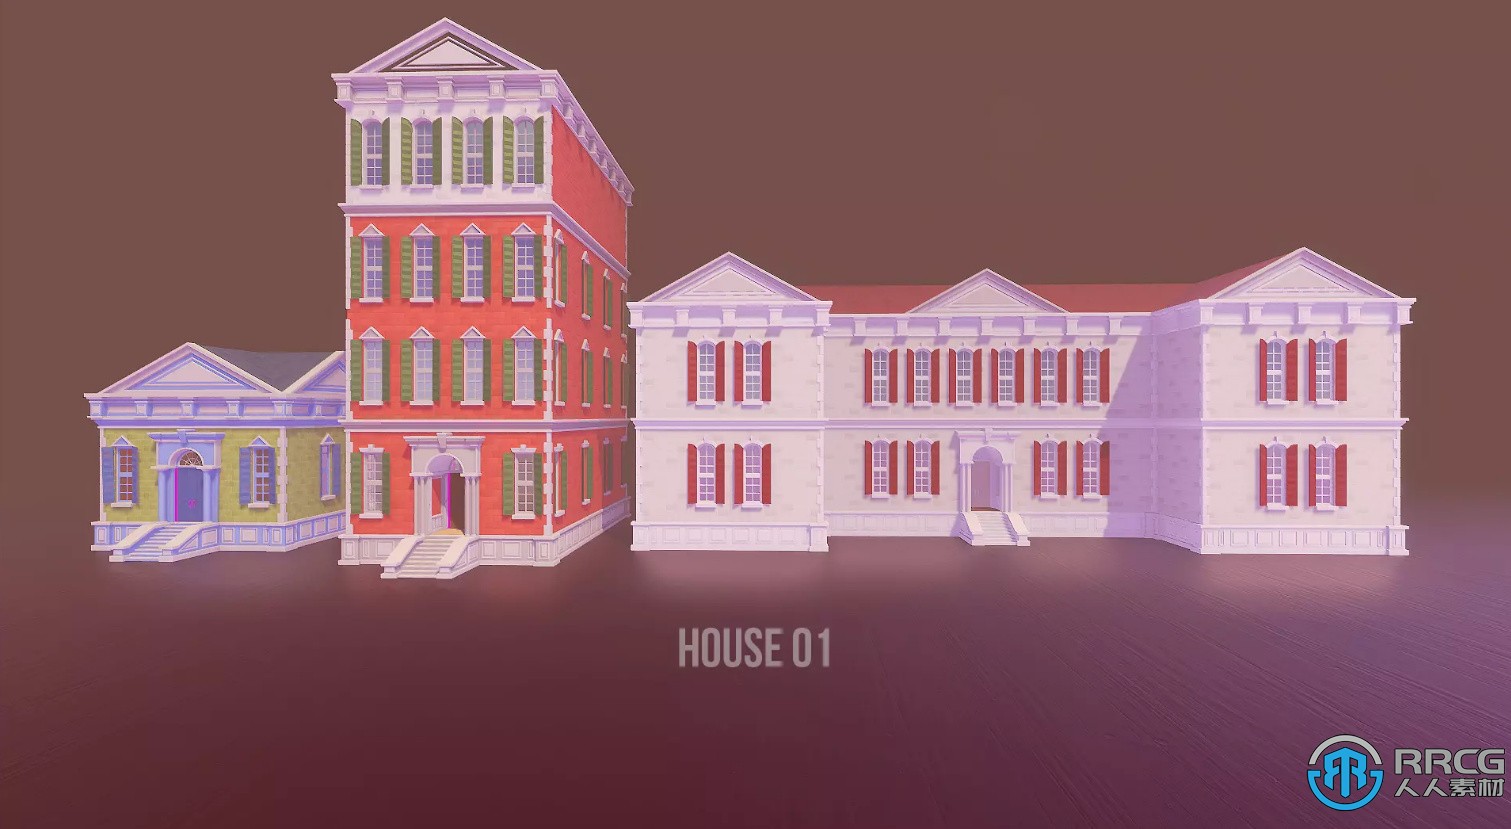 模块化风格的殖民地城镇场景Unity游戏素材资源